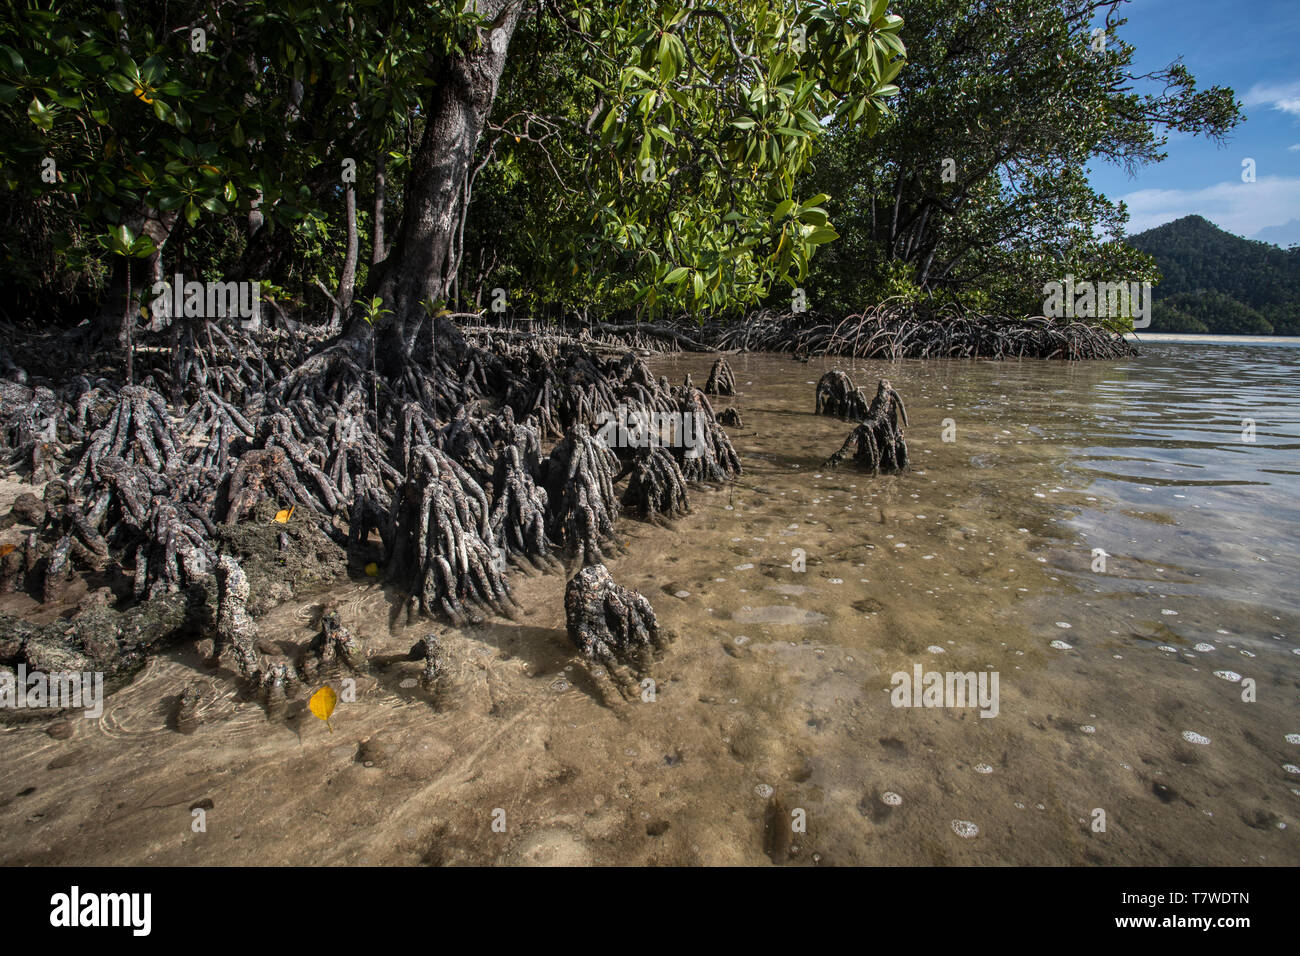 Les mangroves dans Wayag, l'île de Raja Ampat, Papouasie occidentale, en Indonésie Banque D'Images